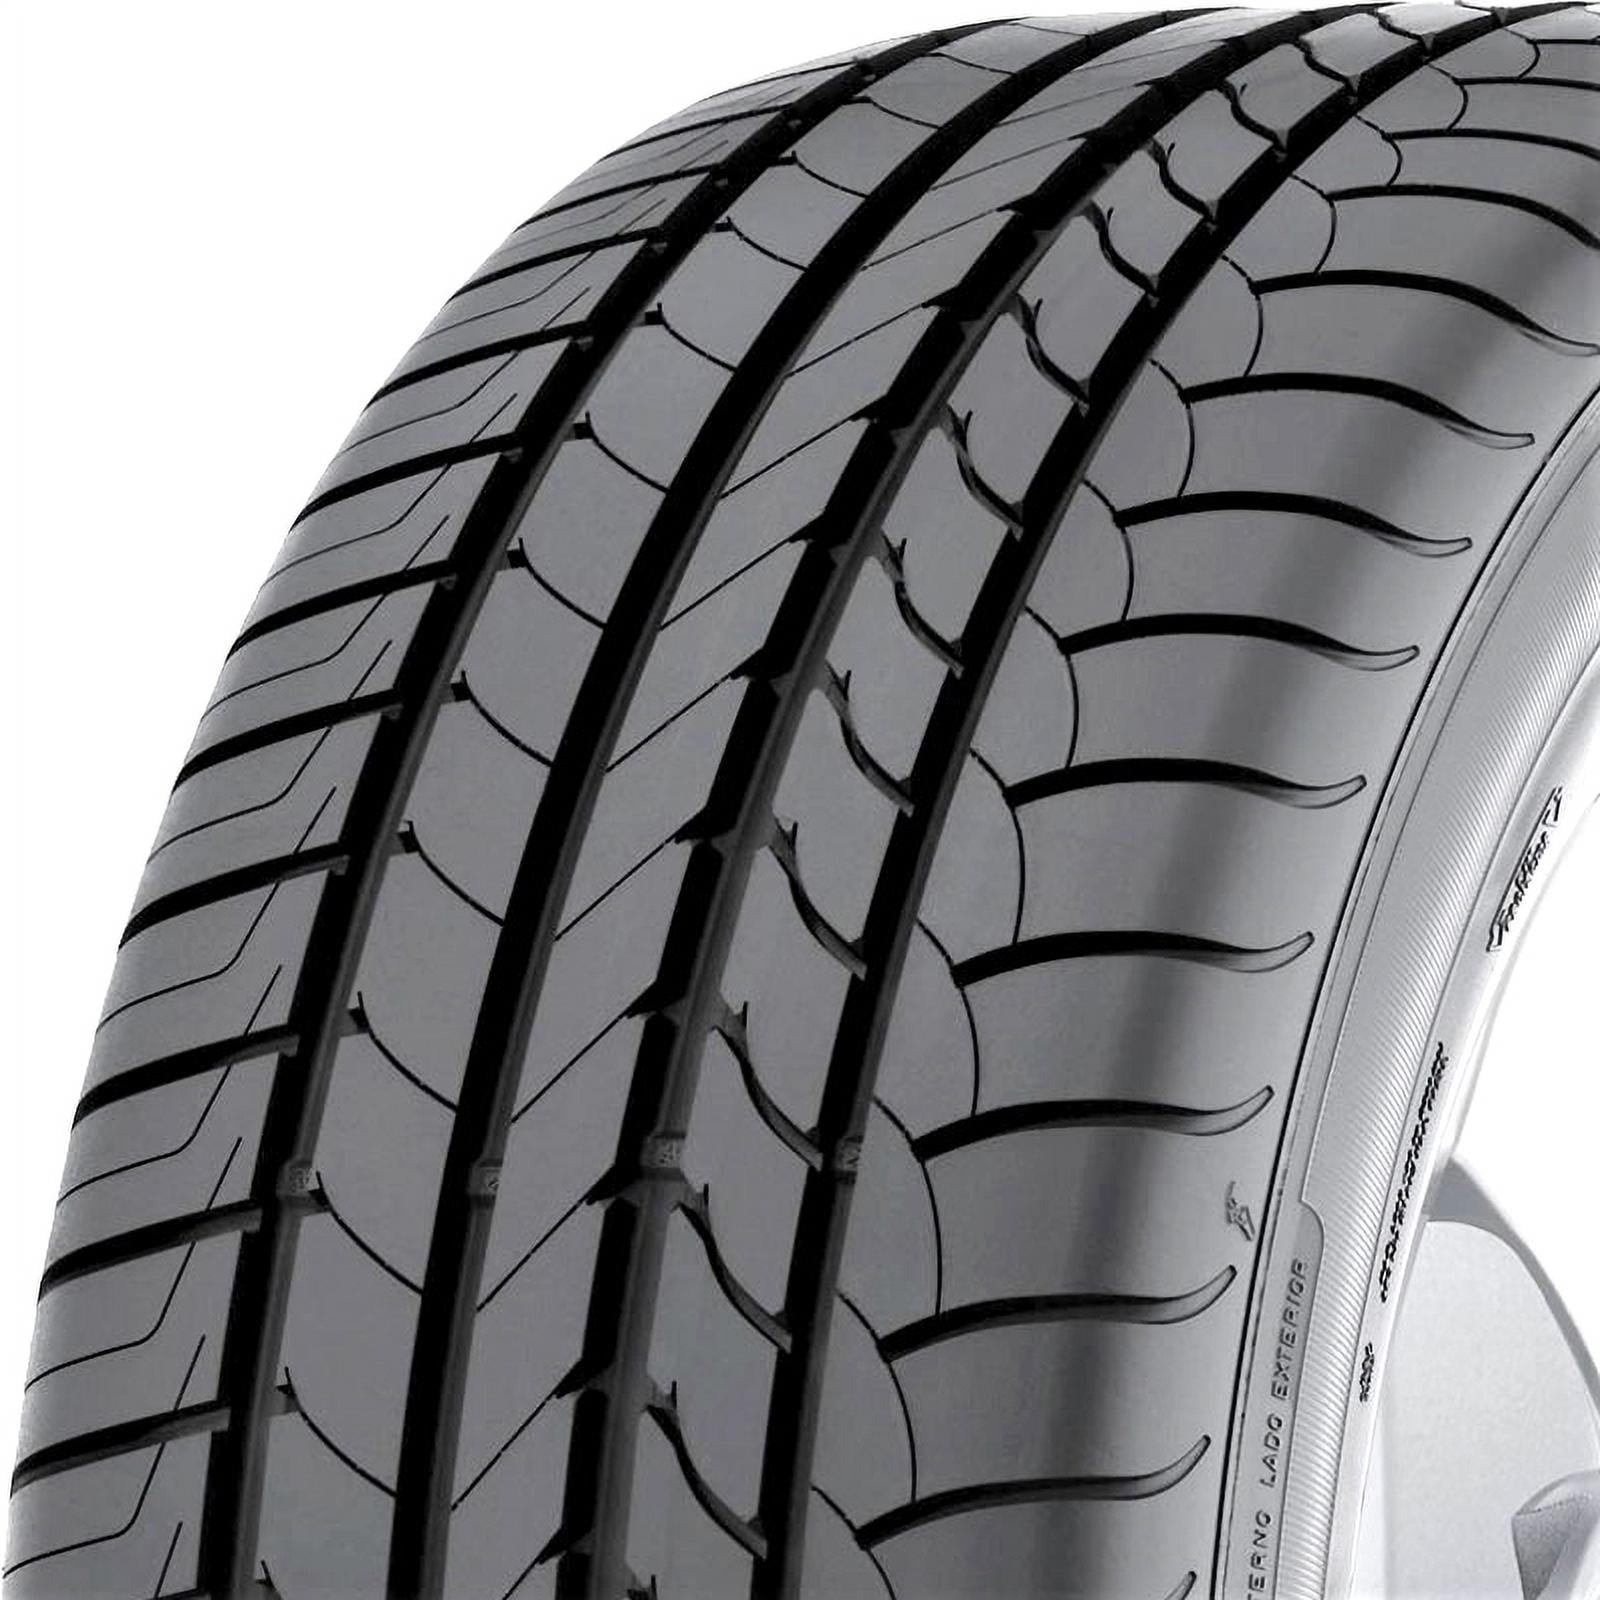 Goodyear EfficientGrip ROF 255/45R20 101Y (OE) Run Flat High Performance  Tire